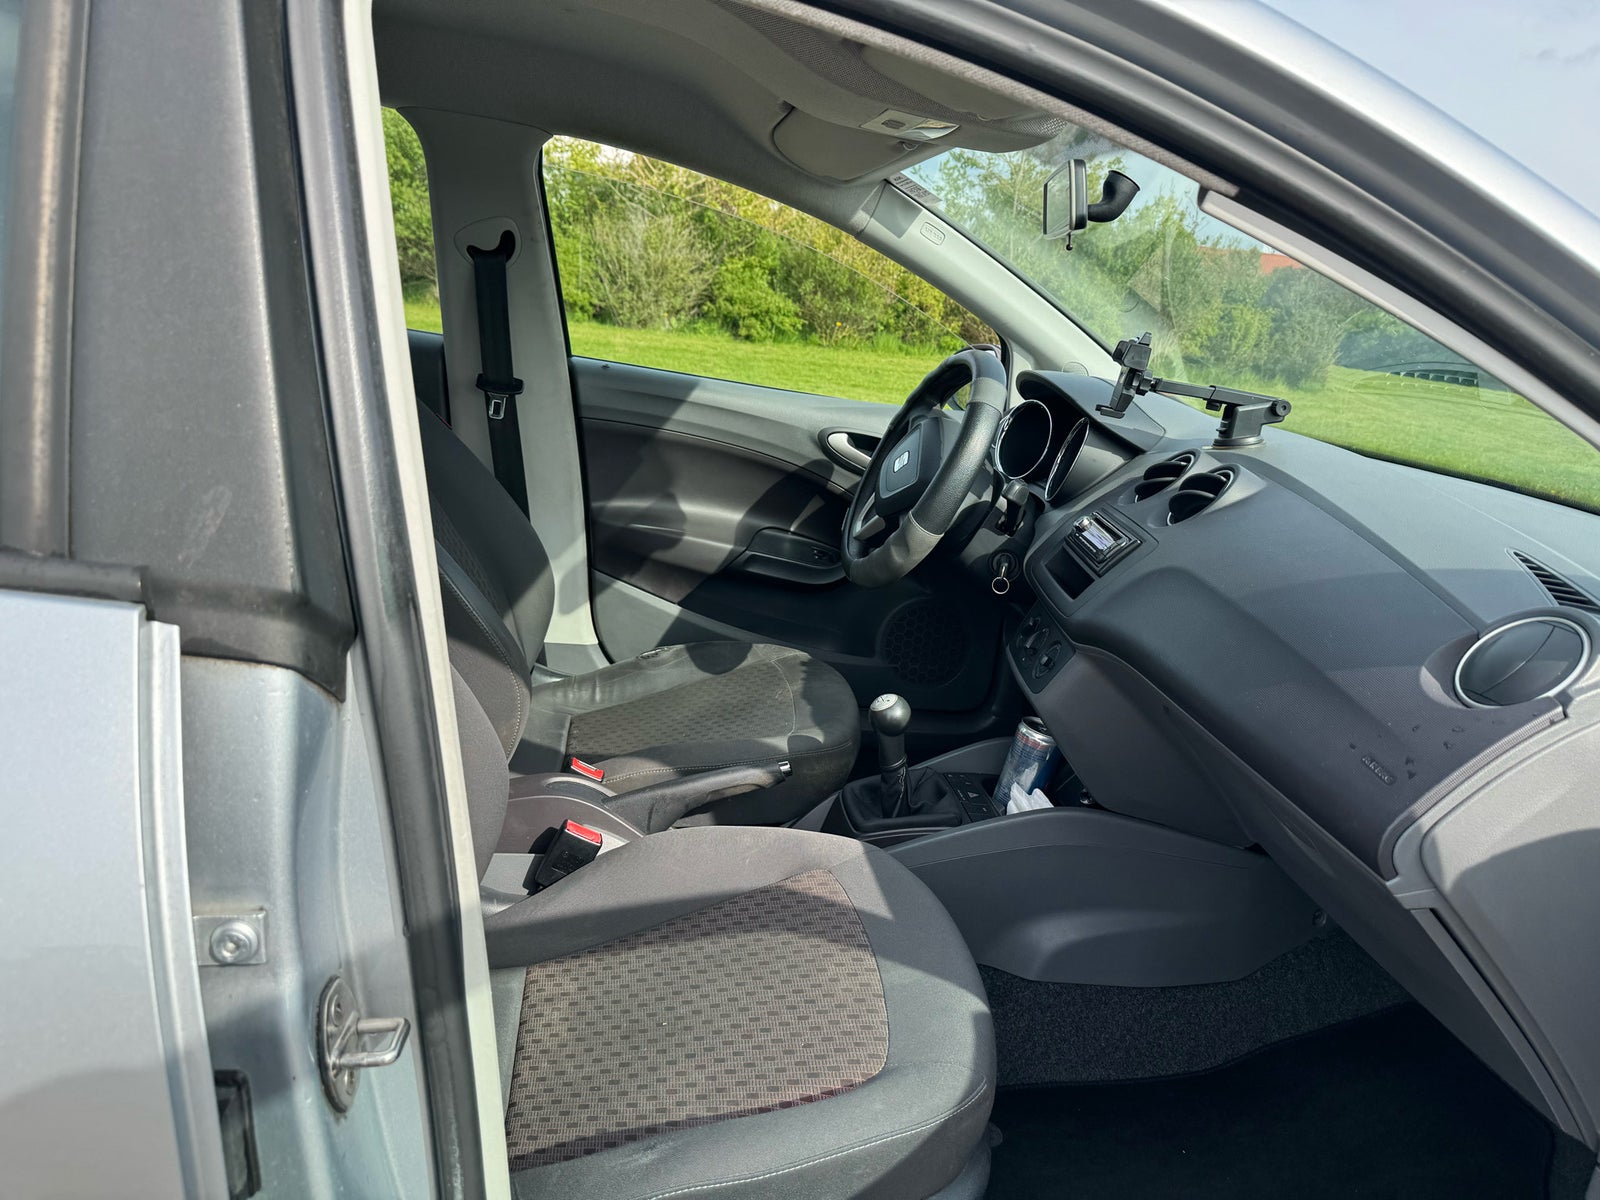 Seat Ibiza, 1,4 16V Reference, Benzin